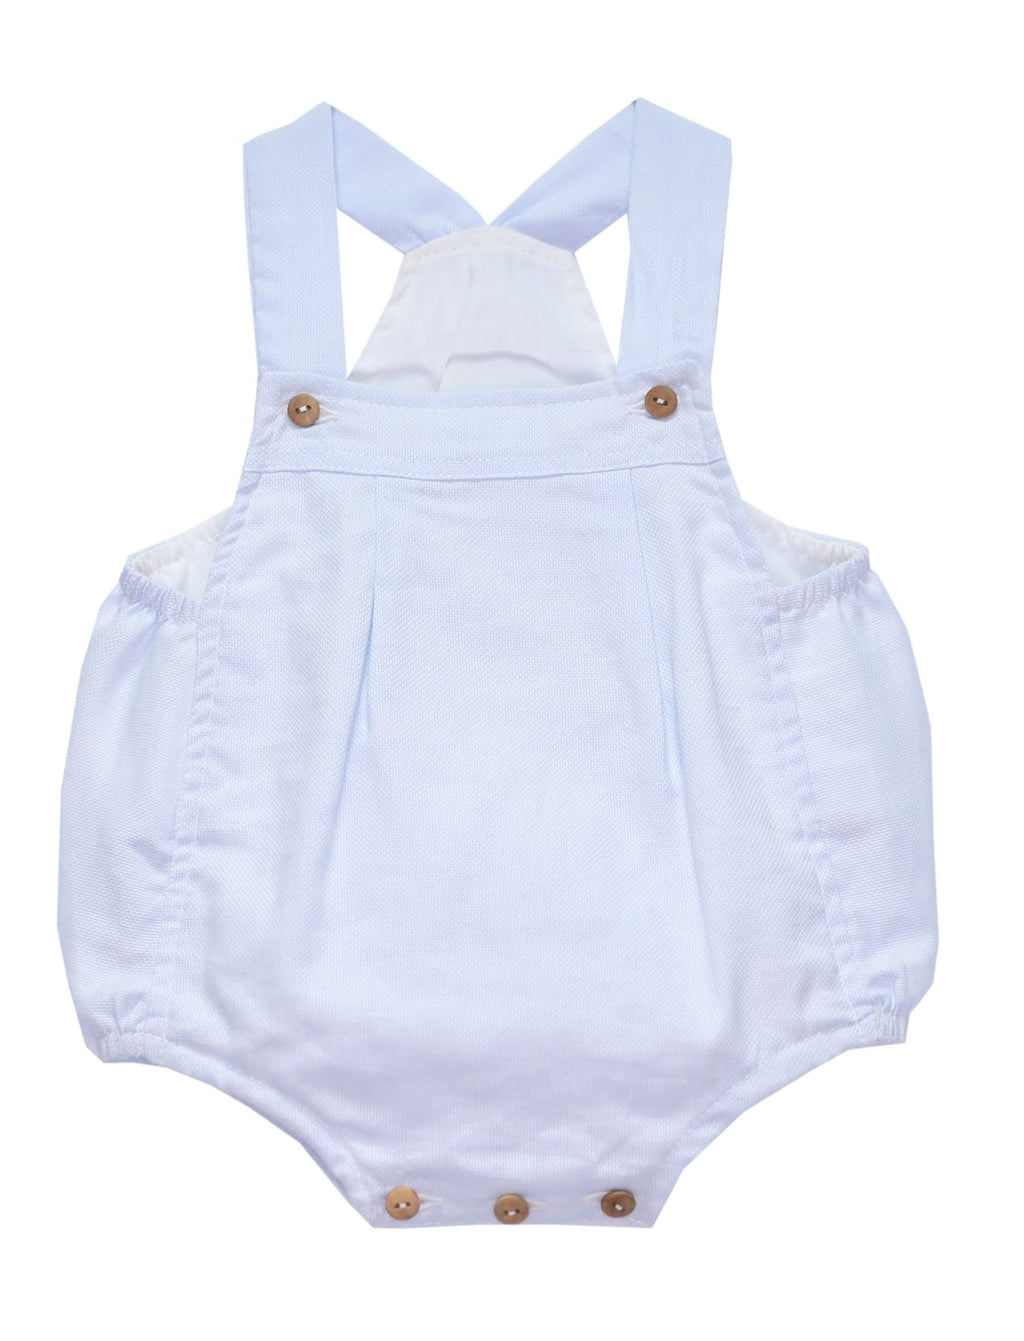 Basics - Blue jacquard baby romper - Little Threads Inc. Children's Clothing